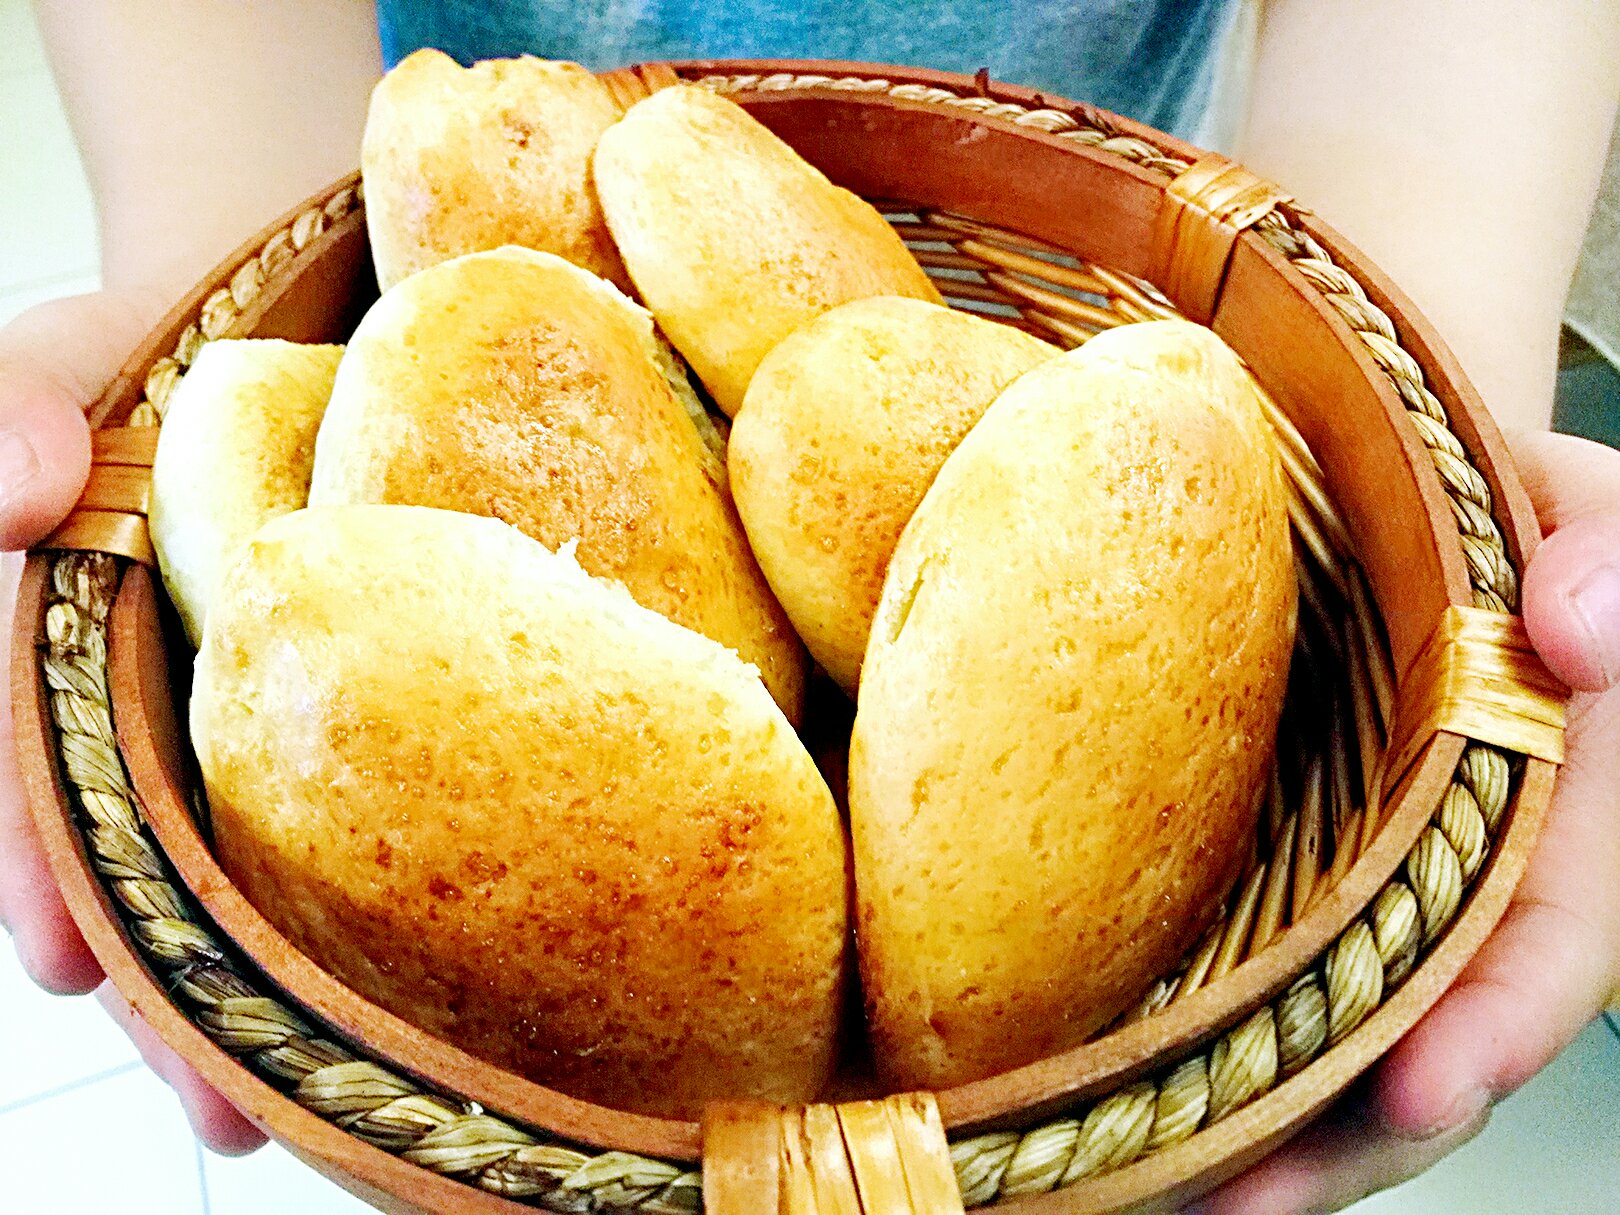 糯米餐包----蚕丝一般的面包组织